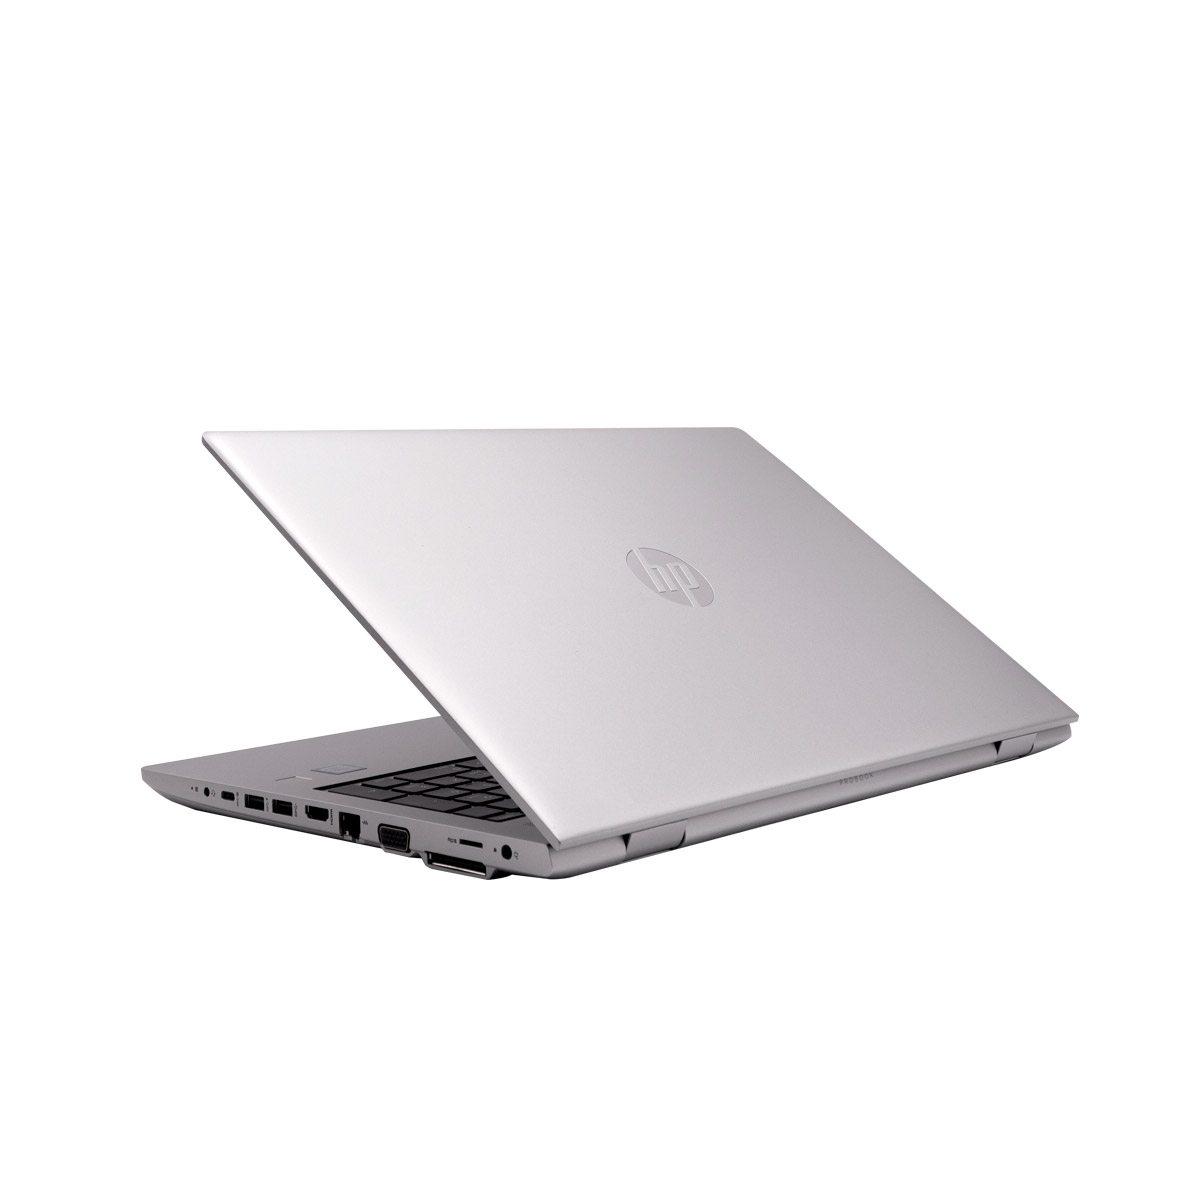 HP ProBook 650 G5 - Business Laptop